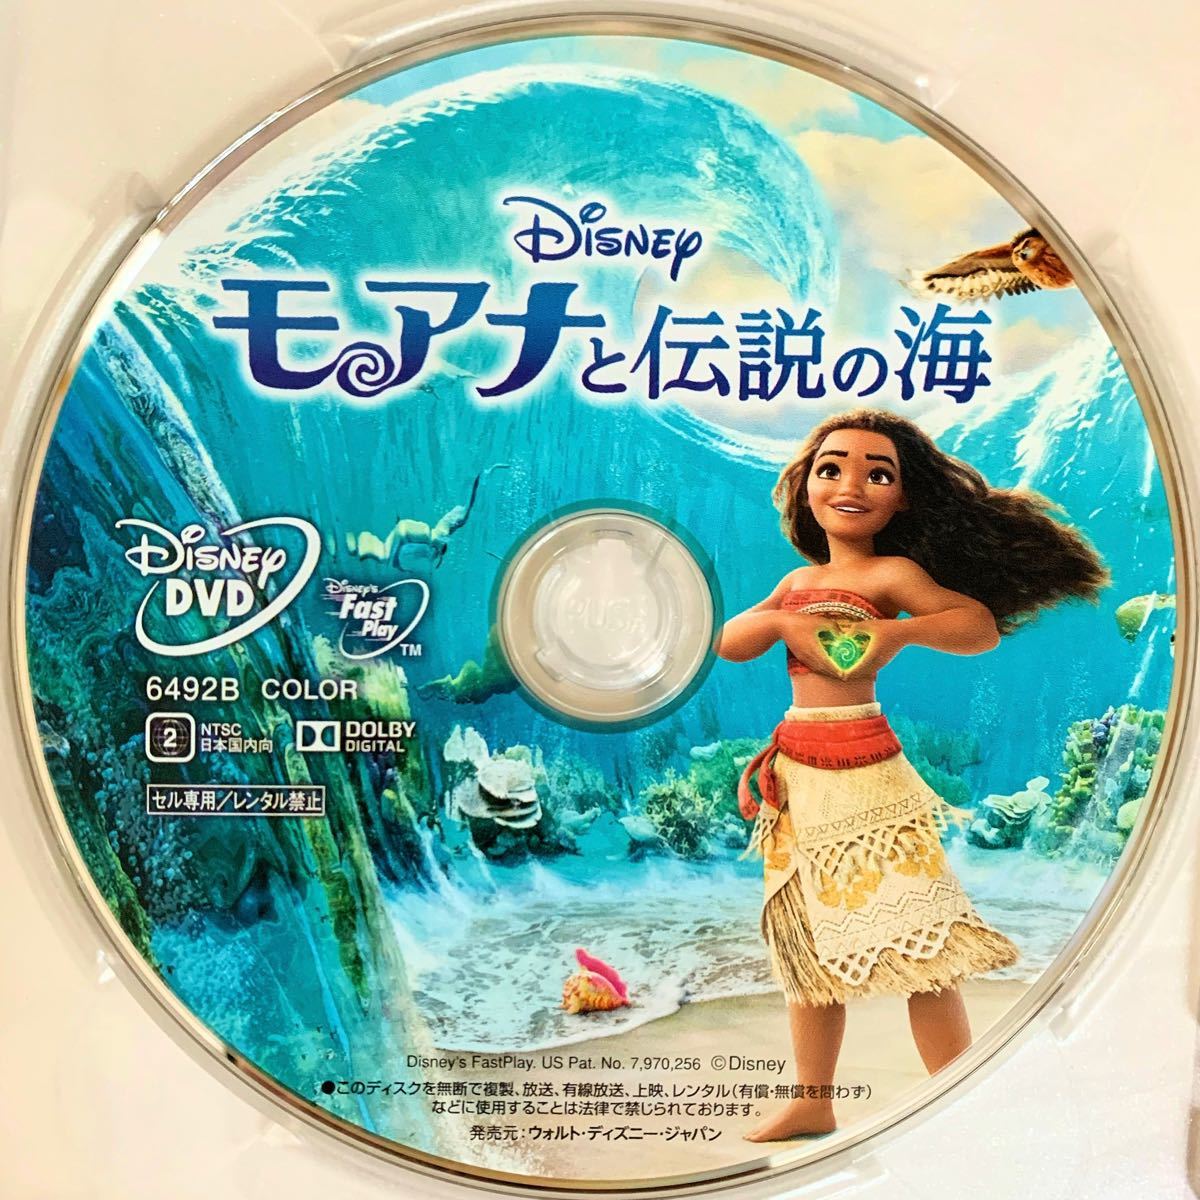 モアナと伝説の海 DVDディスクのみ 【国内正規版】新品未再生 MovieNEX  ディズニー Disney